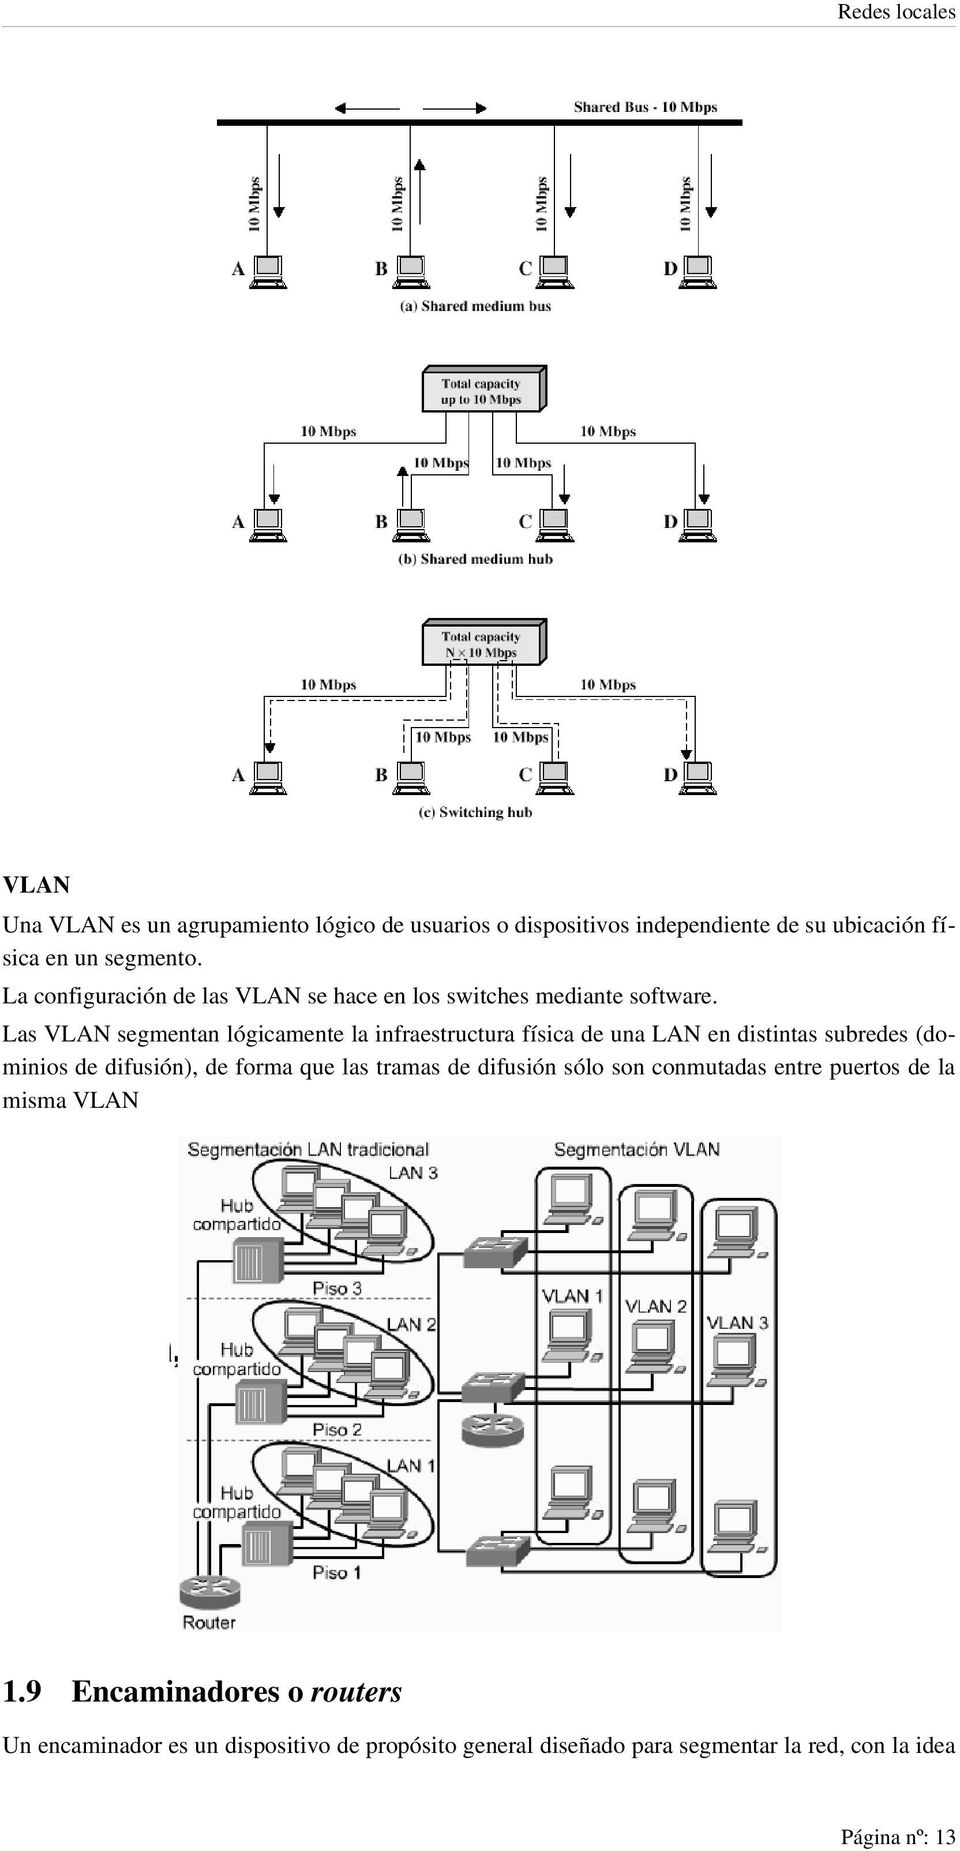 Las VLAN segmentan lógicamente la infraestructura física de una LAN en distintas subredes (dominios de difusión), de forma que las